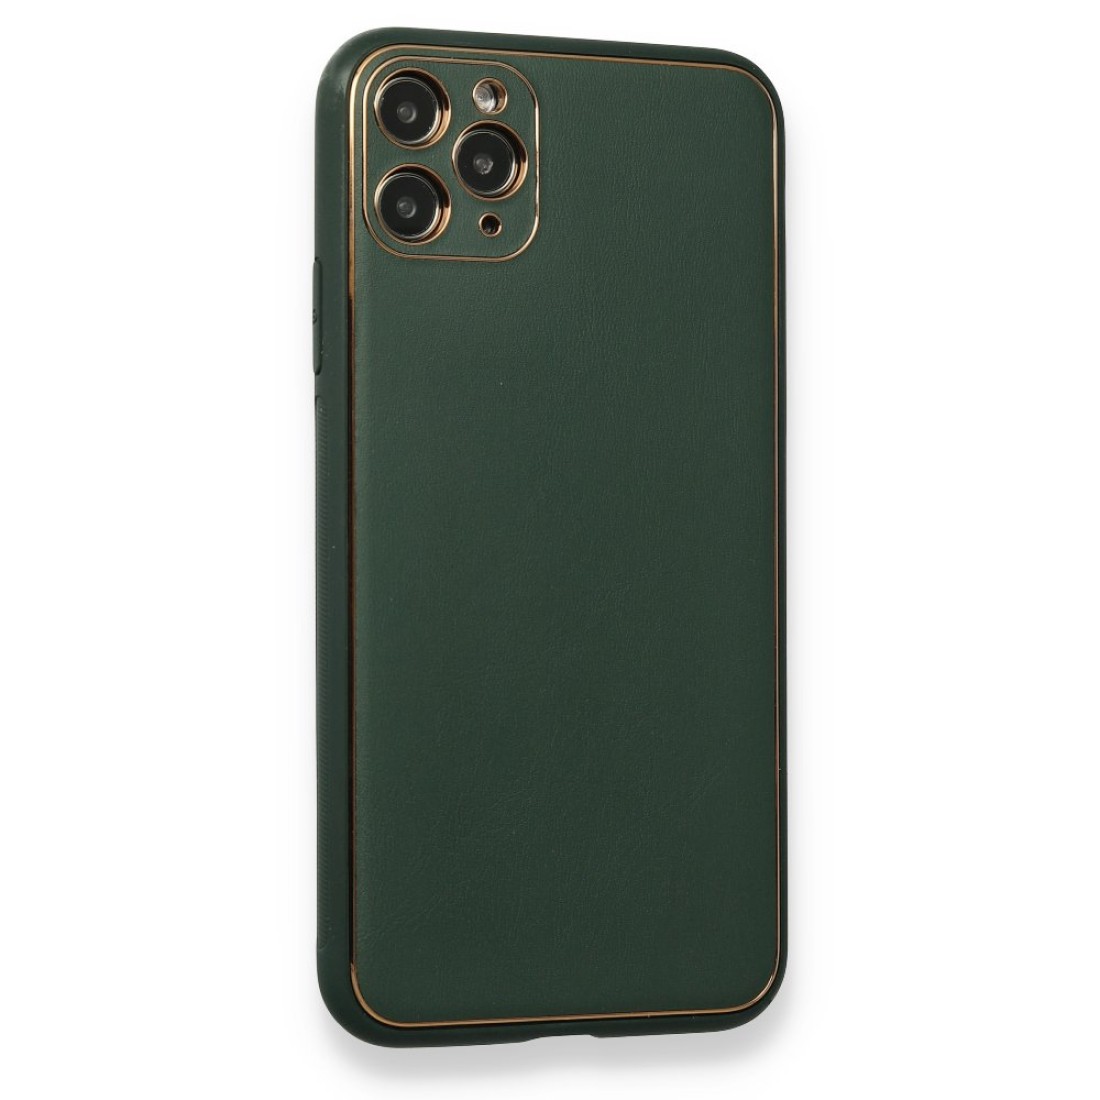 Apple iPhone 11 Pro Kılıf Coco Deri Silikon Kapak - Yeşil